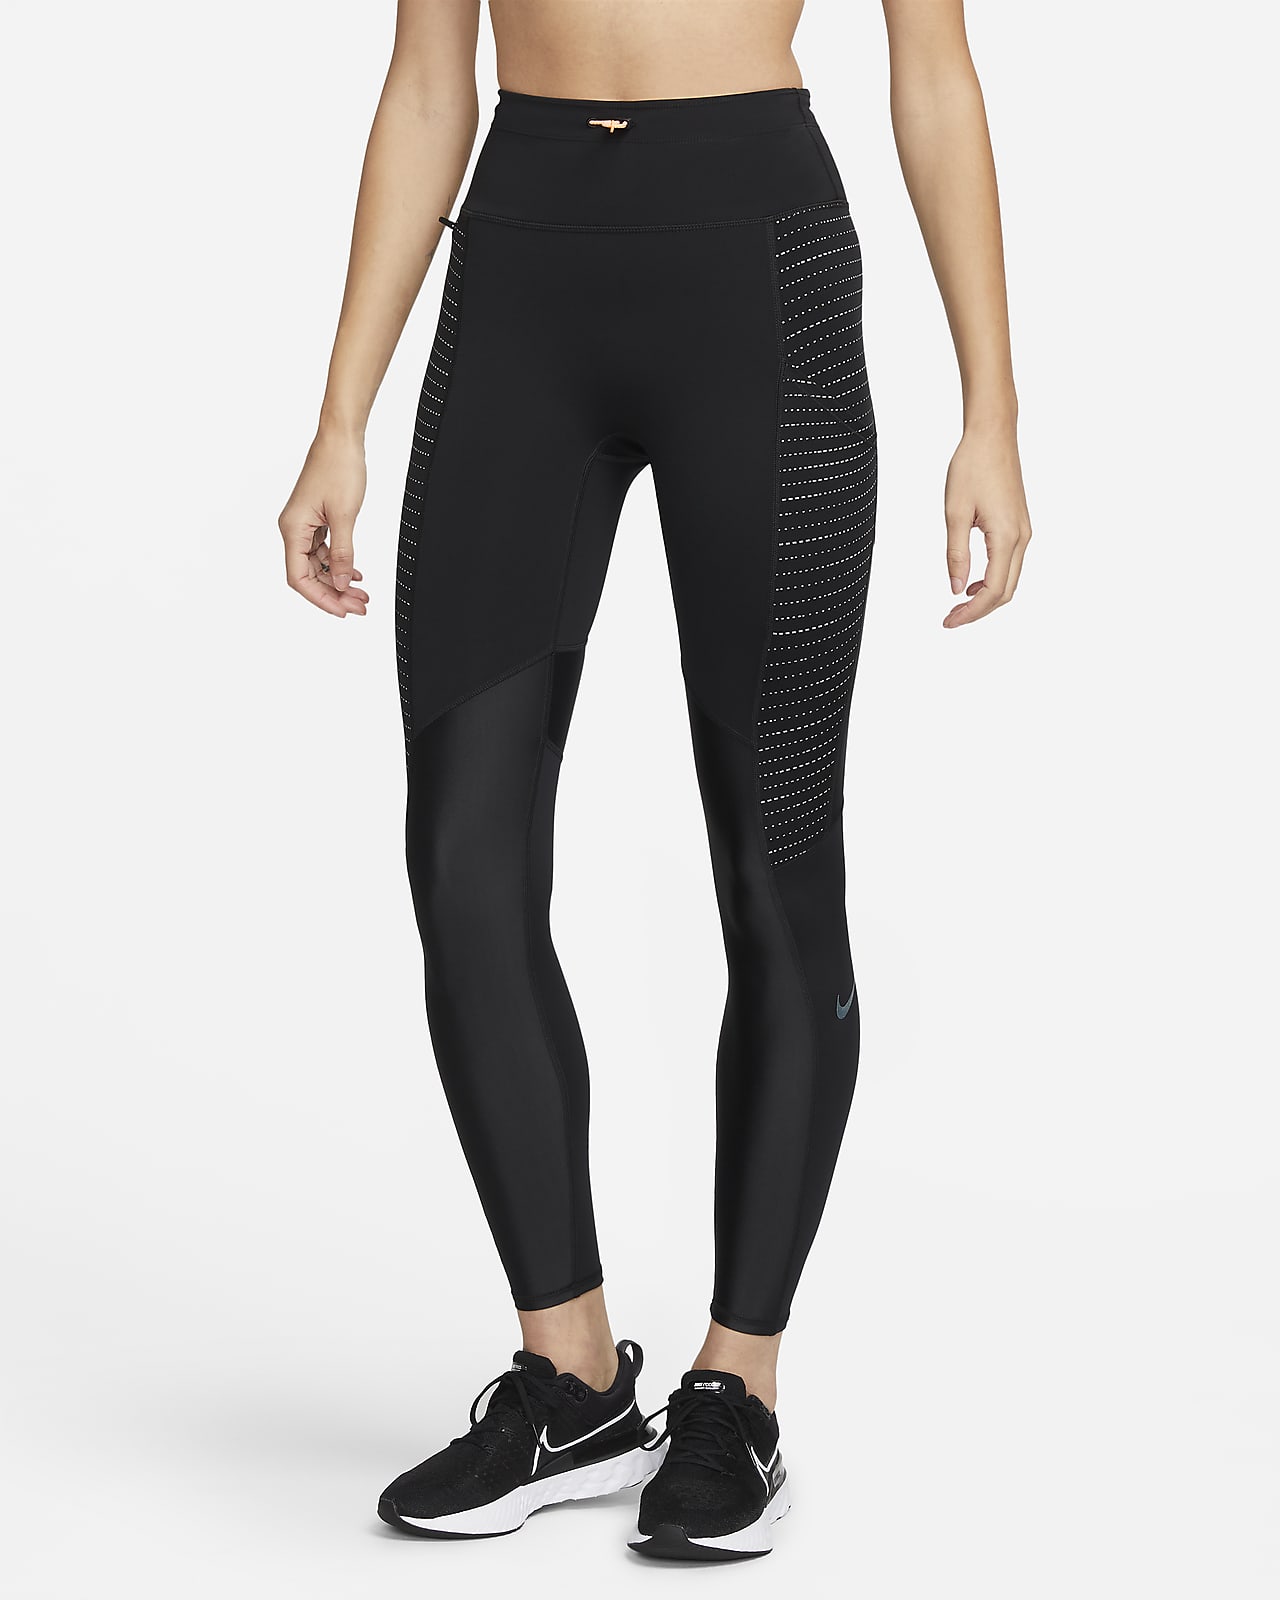 Γυναικείο κολάν μεσαίου ύψους για τρέξιμο με τσέπη Nike Dri-FIT Run Division Epic Luxe